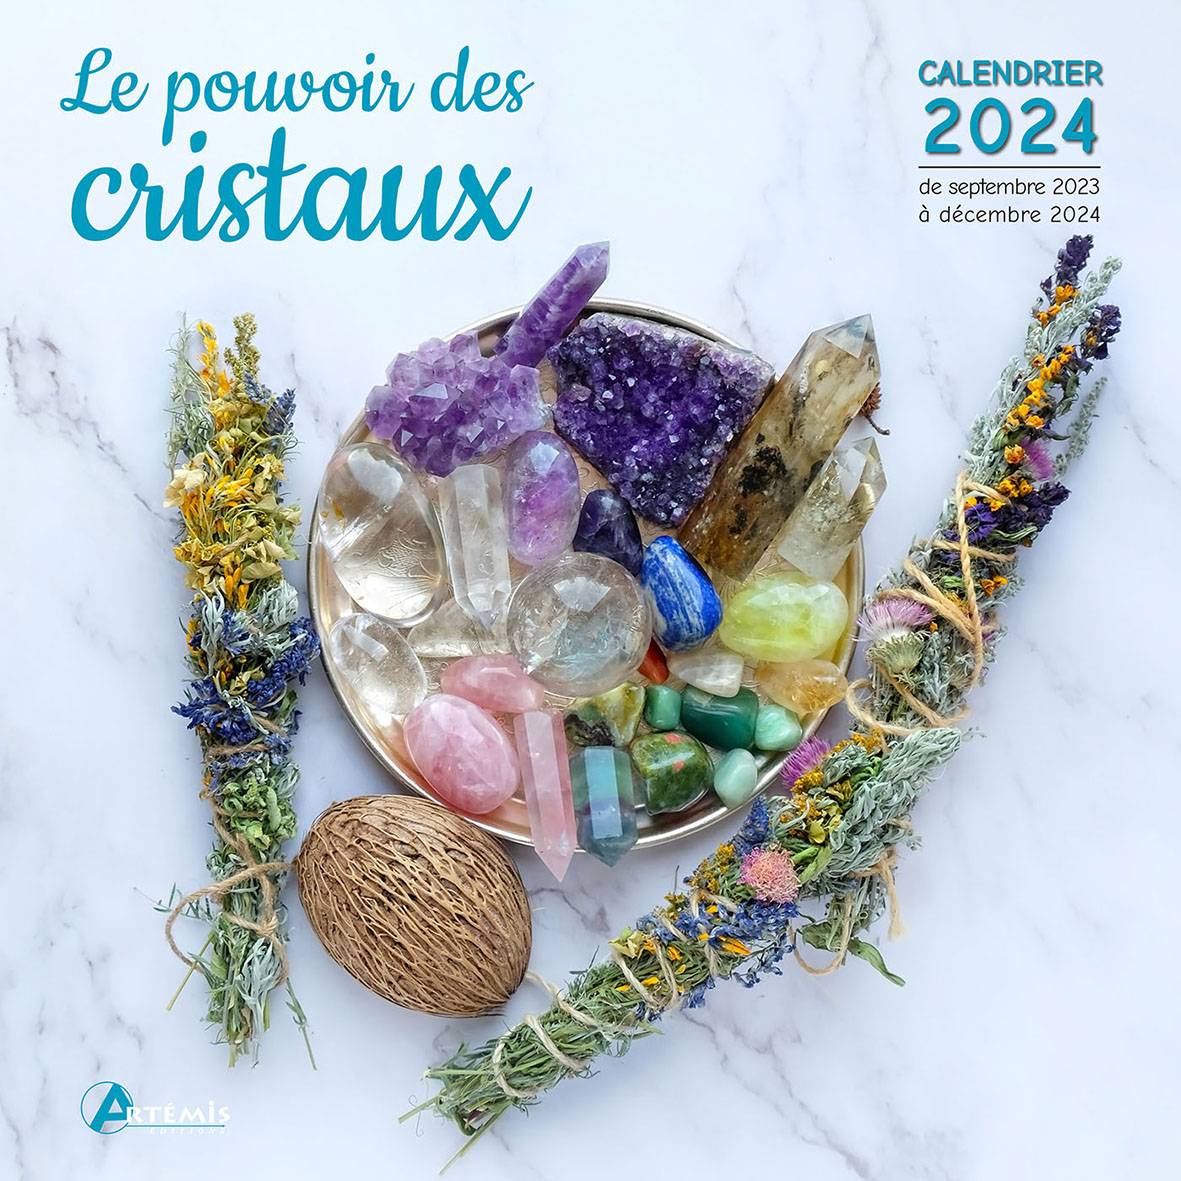 PERIODIQUE CALENDRIER LE POUVOIR DES CRISTAUX 2024